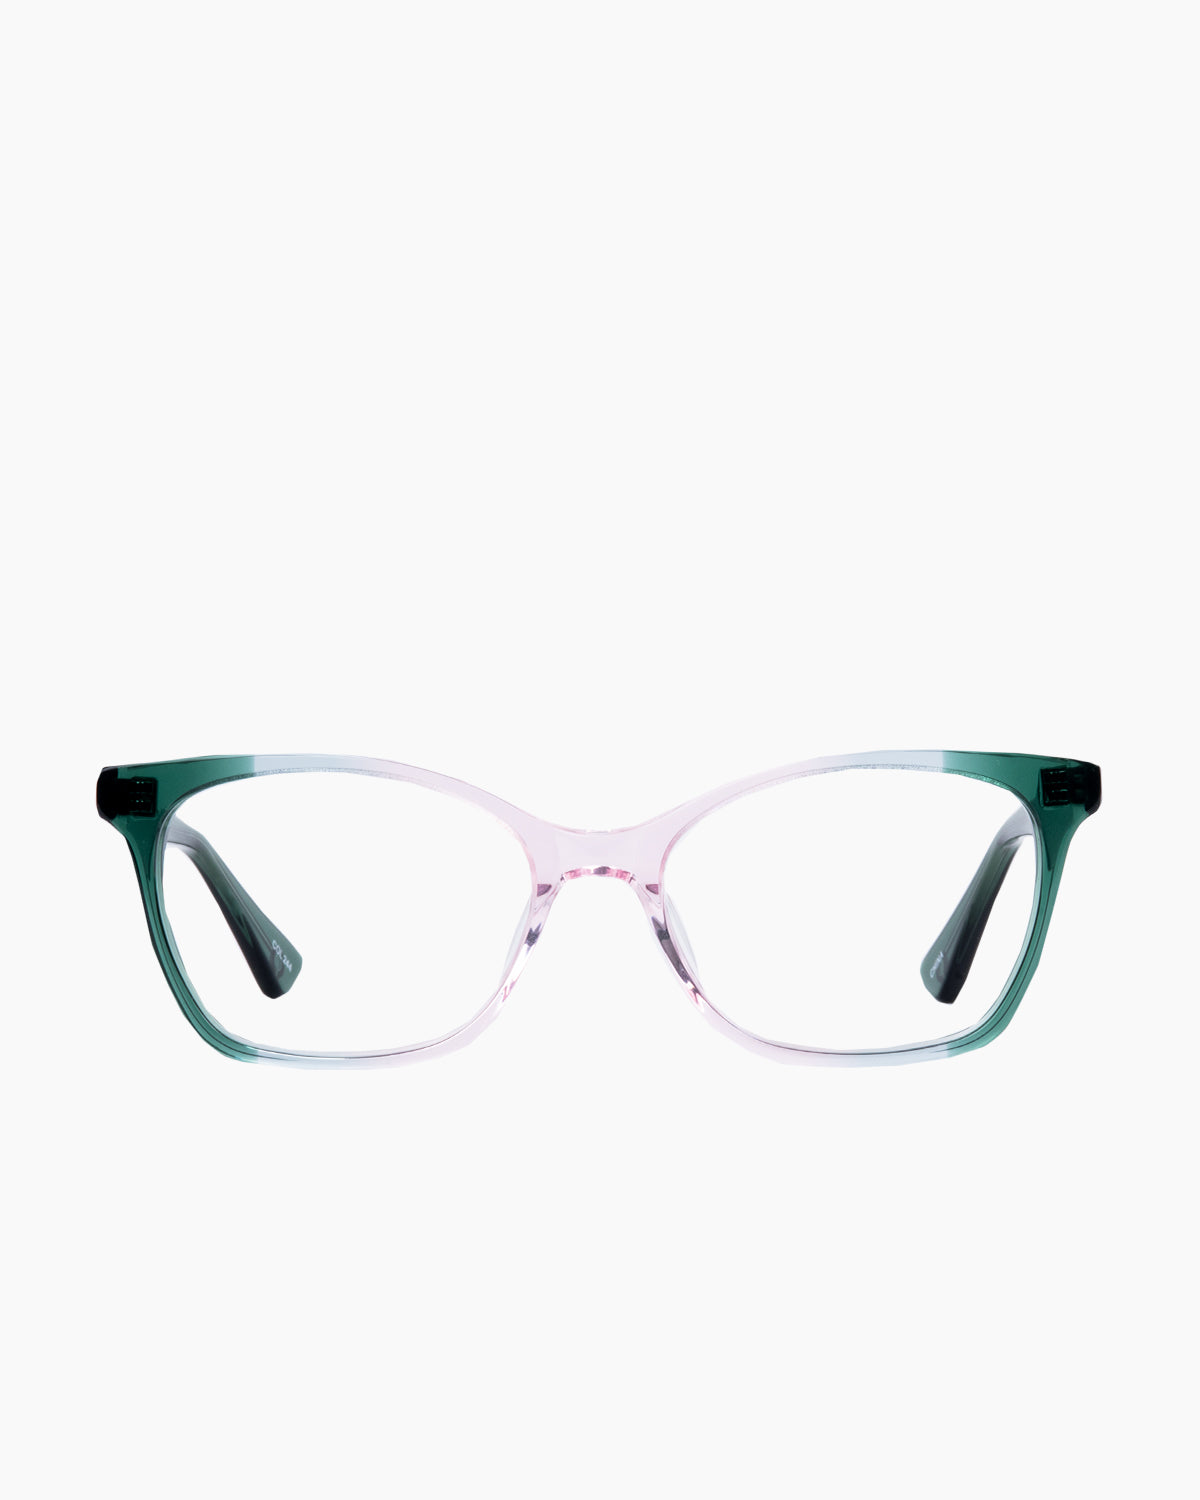 Evolve - Sophia - 244 | glasses bar